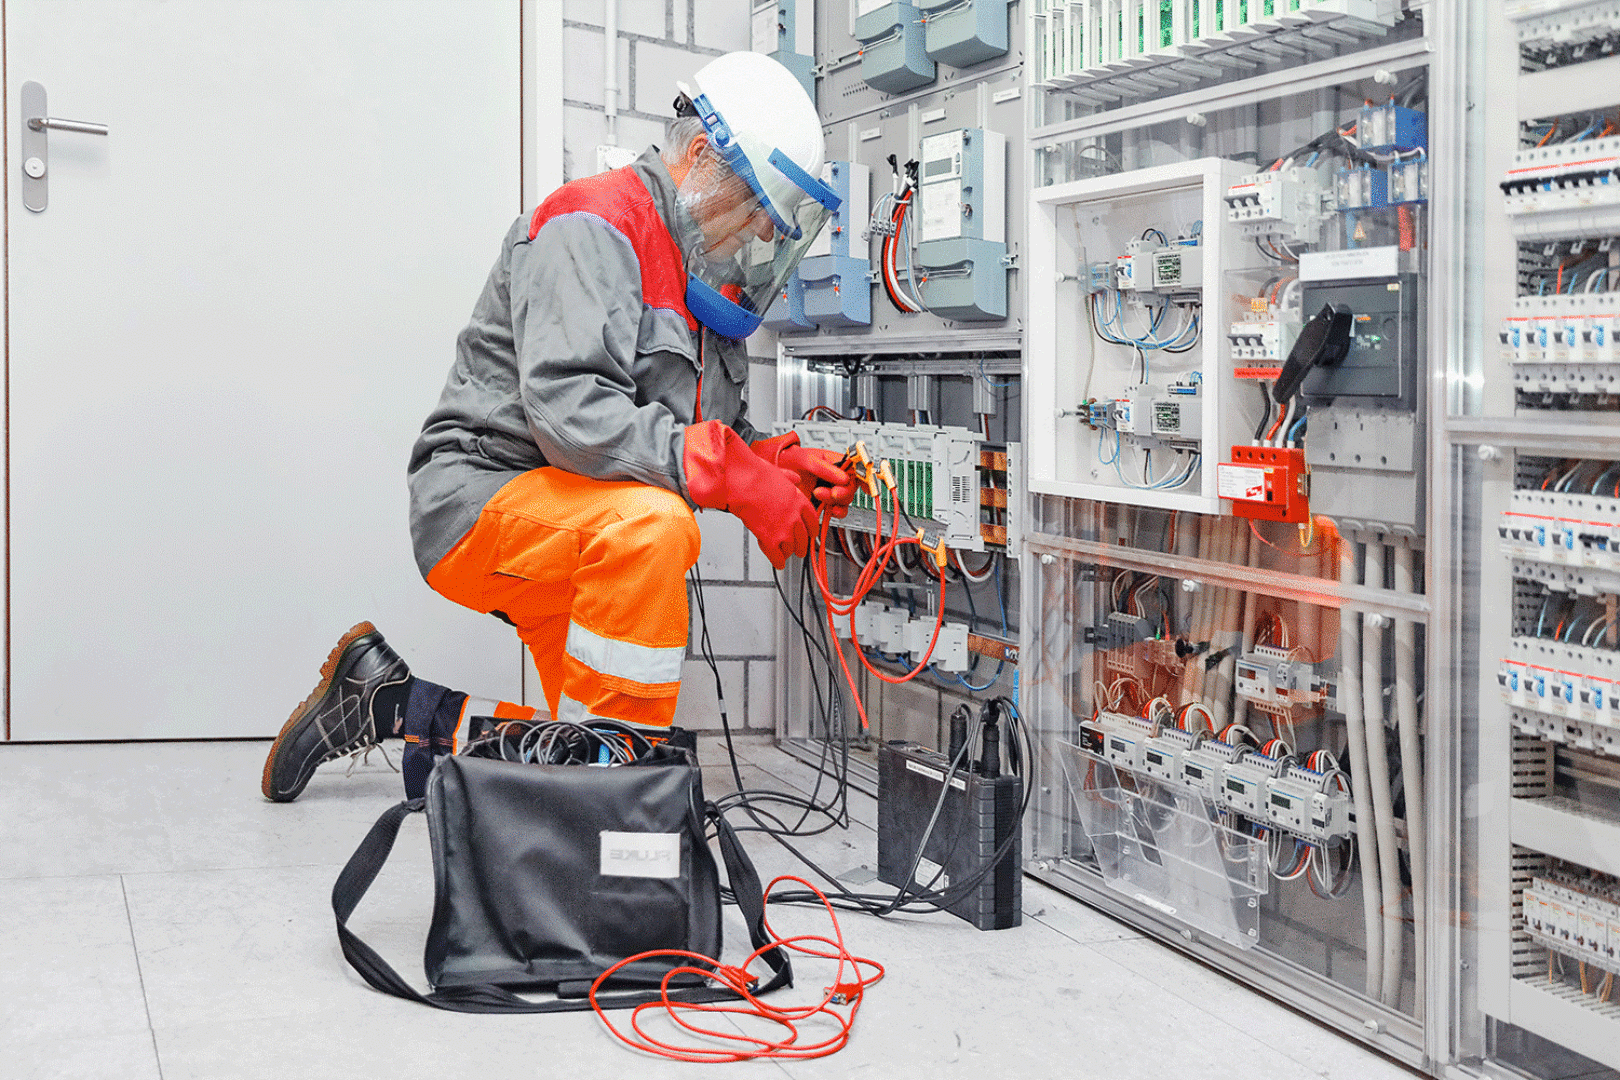 Kontrollarbeiten an Elektroanlagen, Foto: © ETAVIS